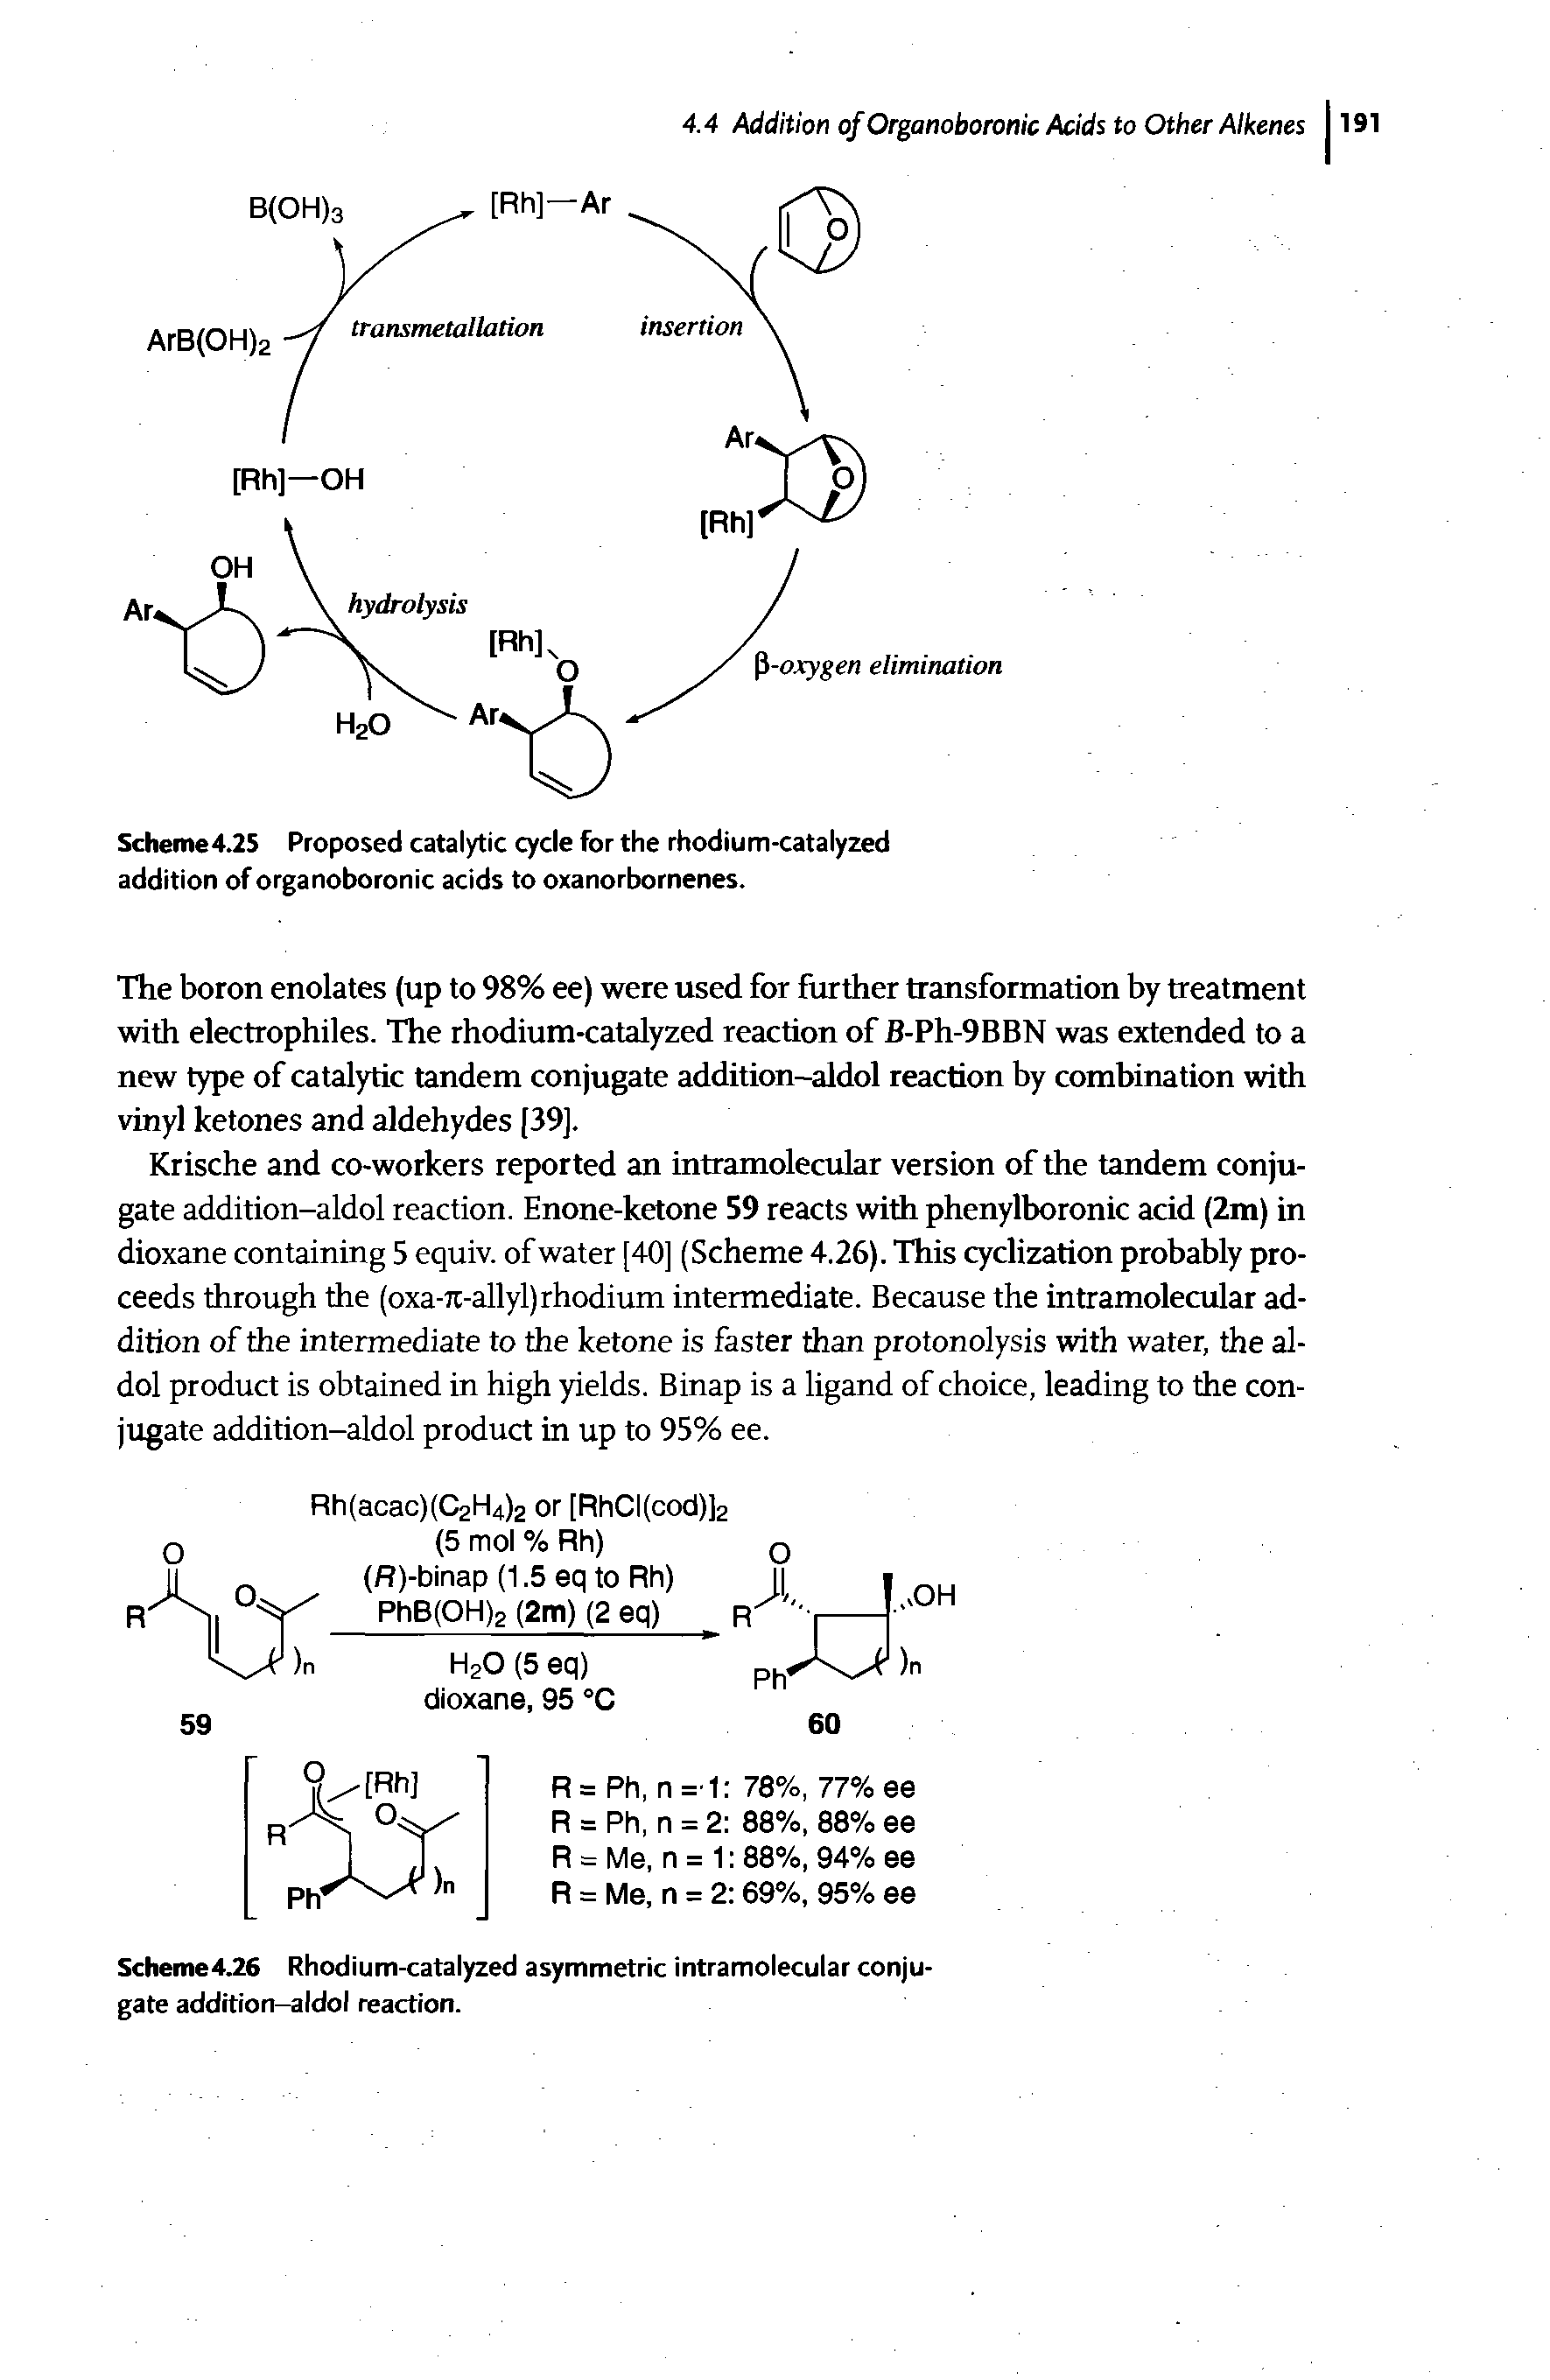 Scheme4.26 Rhodium-catalyzed asymmetric intramolecular conjugate addition-aldol reaction.